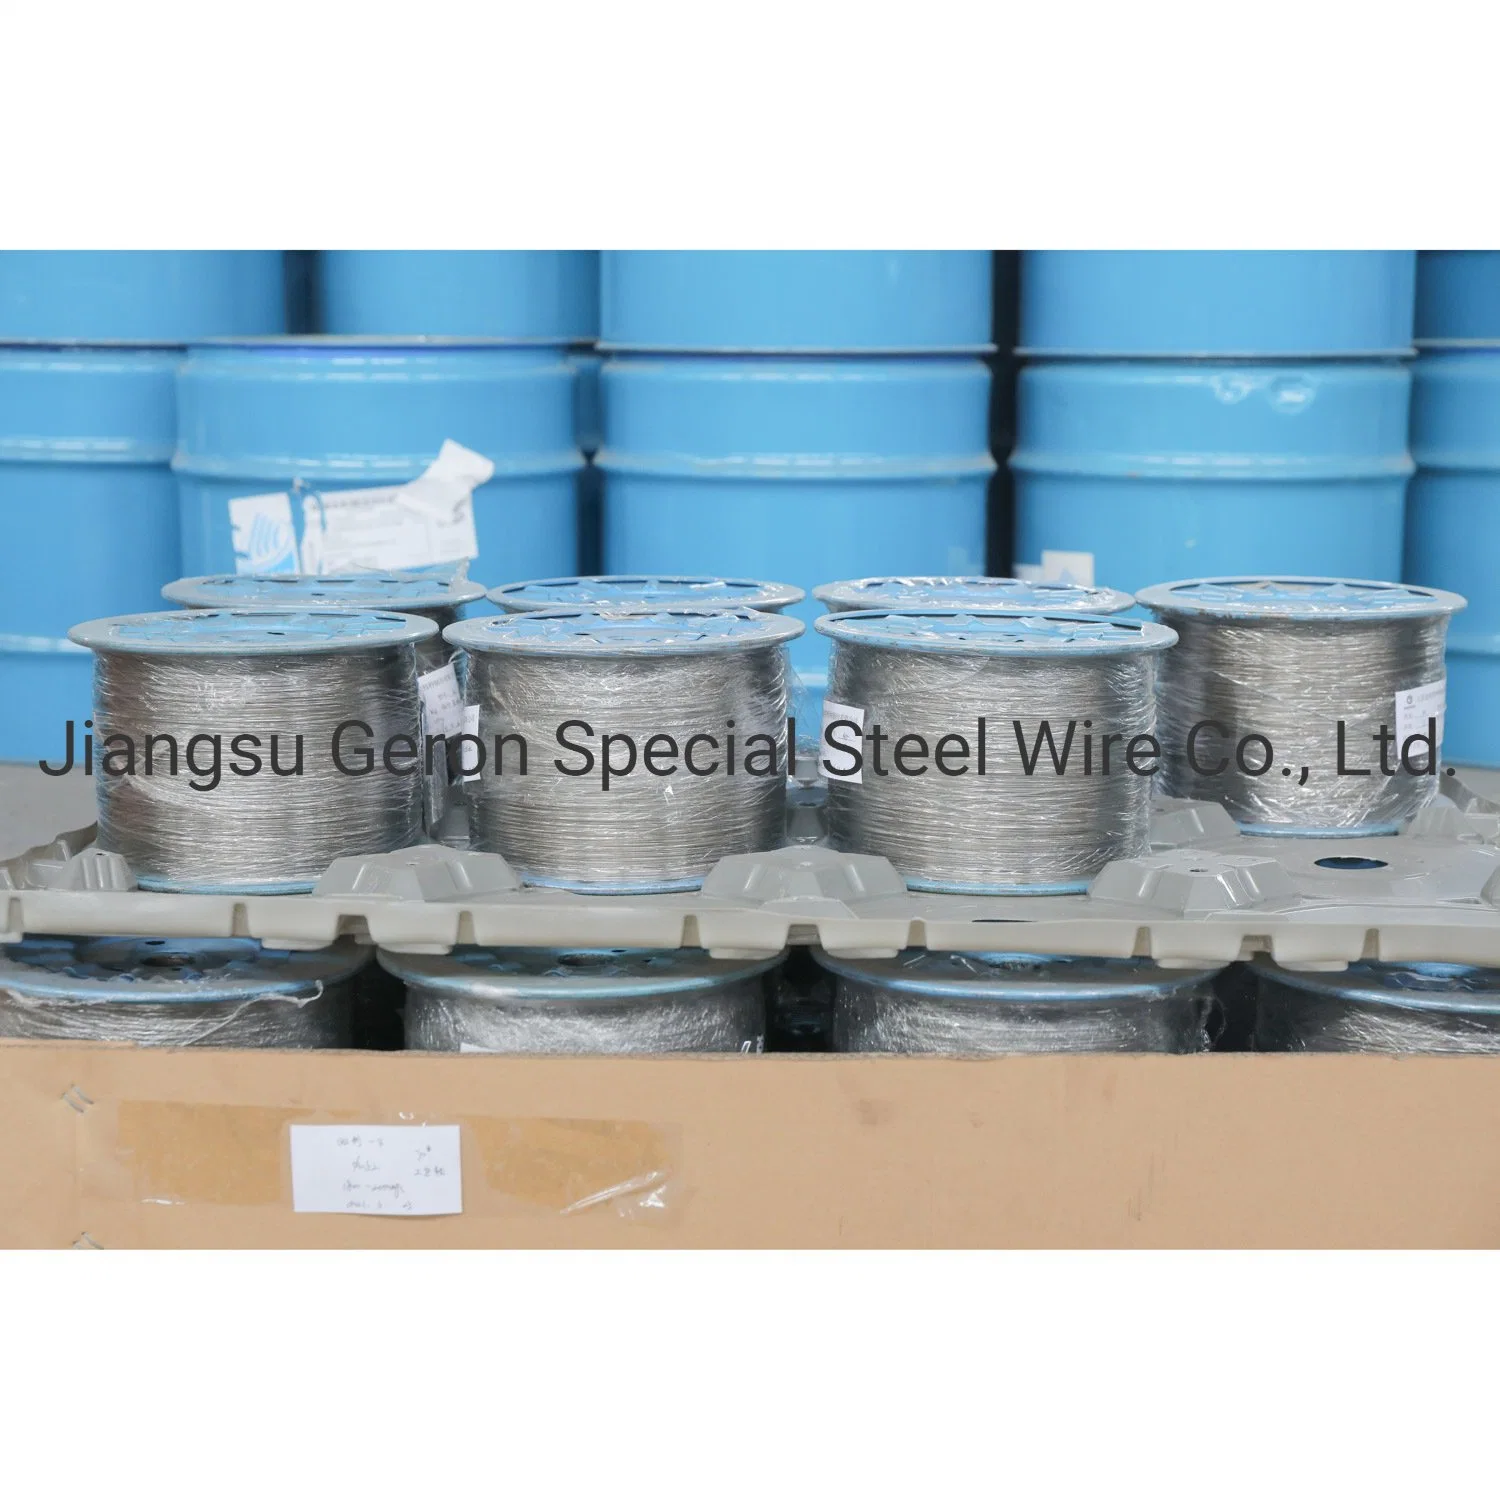 China Fabrik Großhandel/Lieferant schwarzer Stahldraht für Pinsel / Hardware-Werkzeuge / Fischhaken